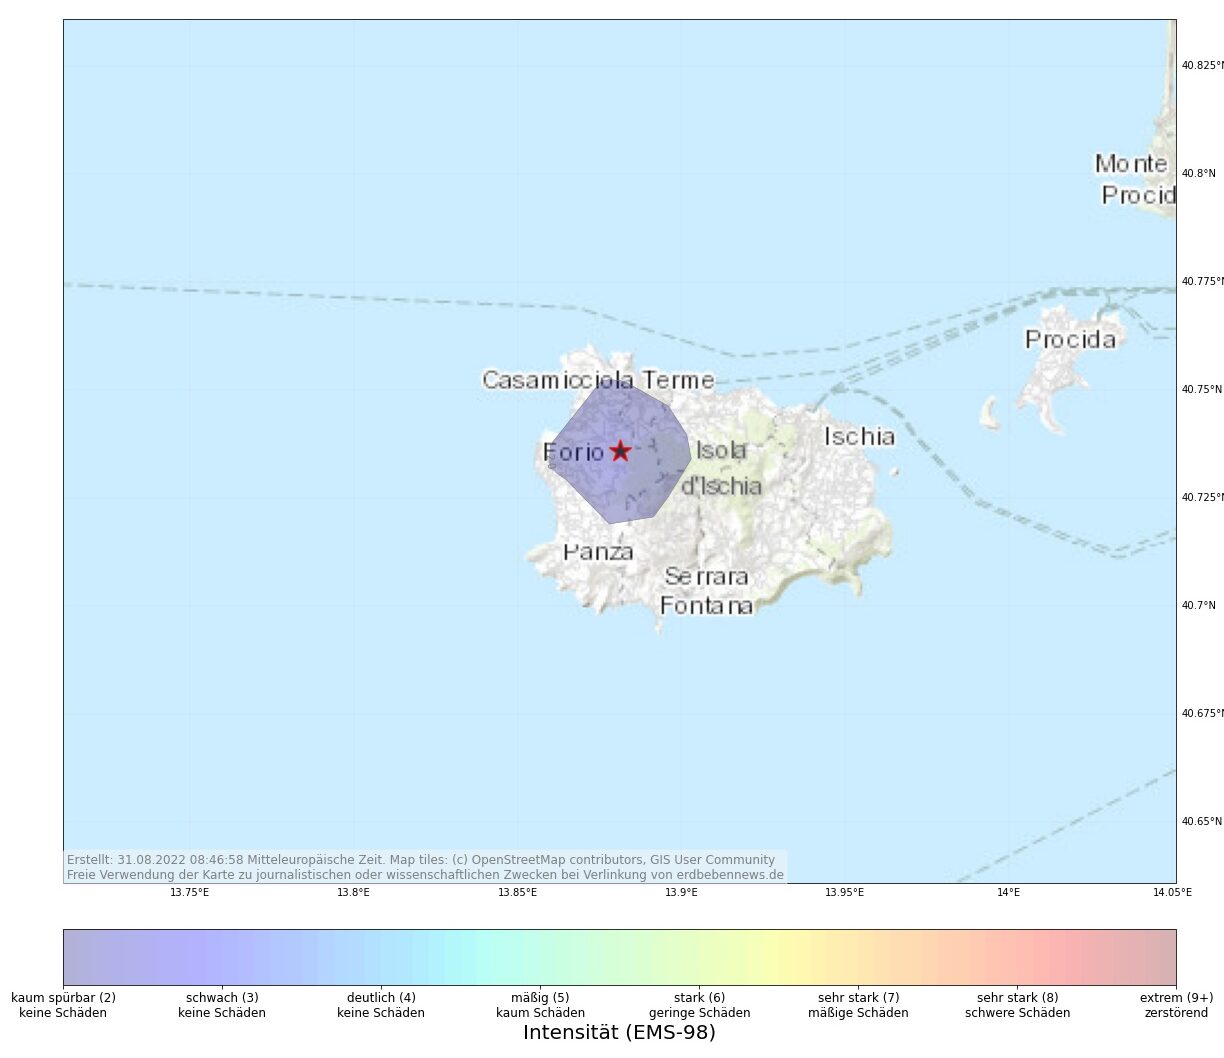 Leichte Erdbebenserie auf Ischia